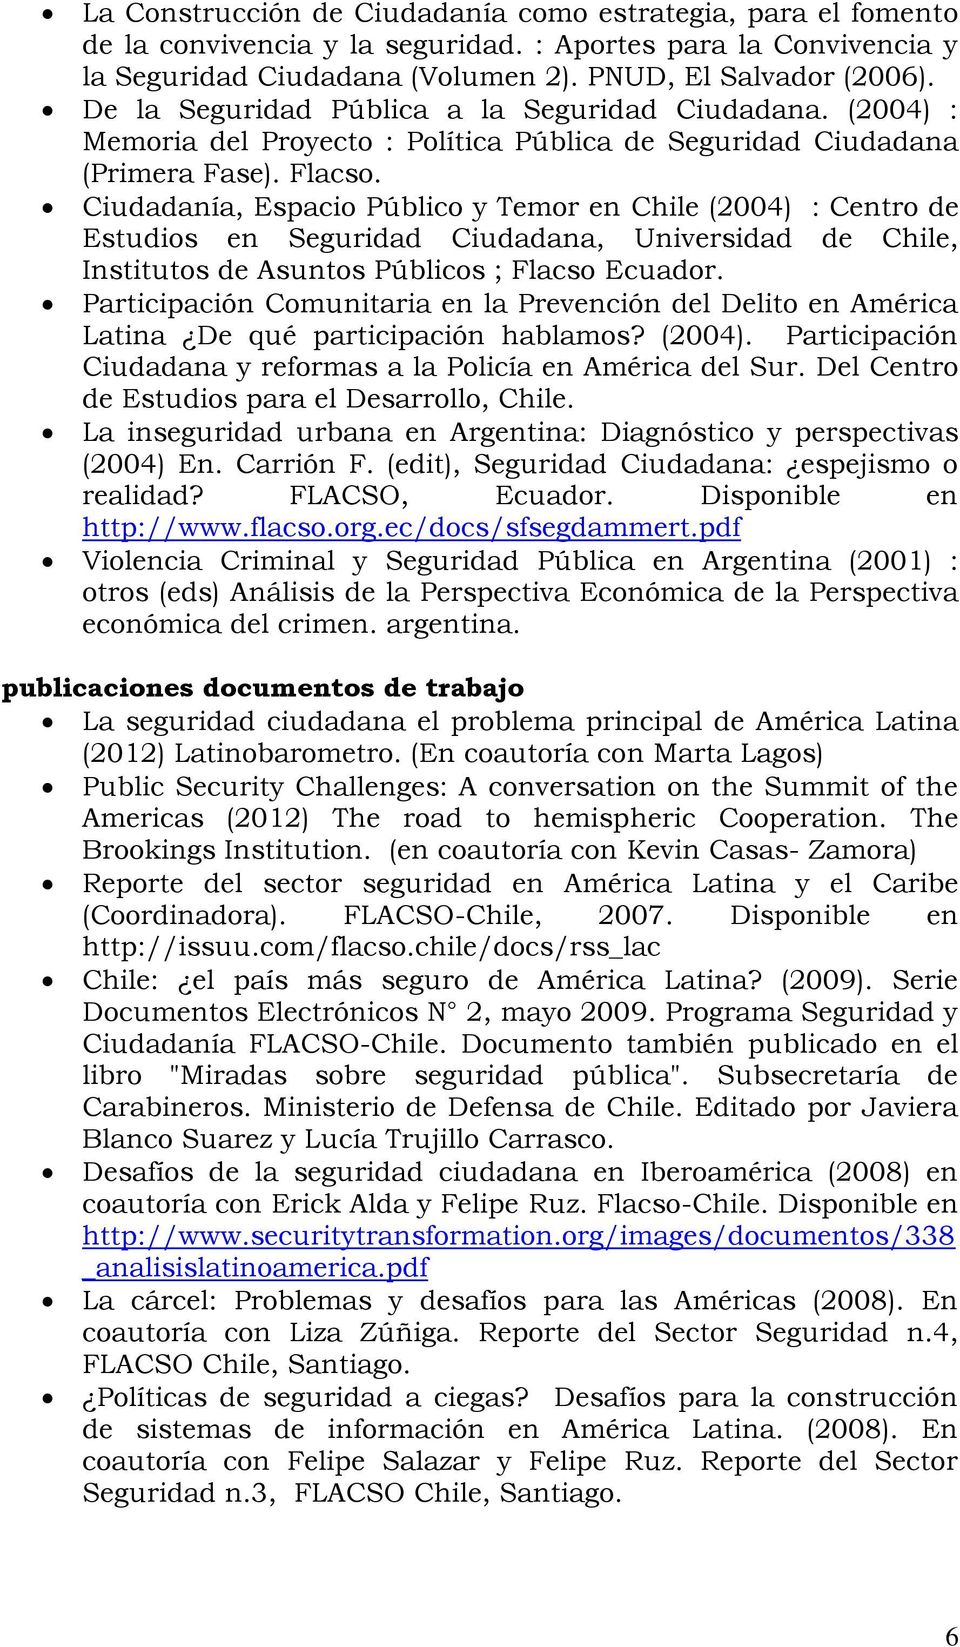 Ciudadanía, Espacio Público y Temor en Chile (2004) : Centro de Estudios en Seguridad Ciudadana, Universidad de Chile, Institutos de Asuntos Públicos ; Flacso Ecuador.